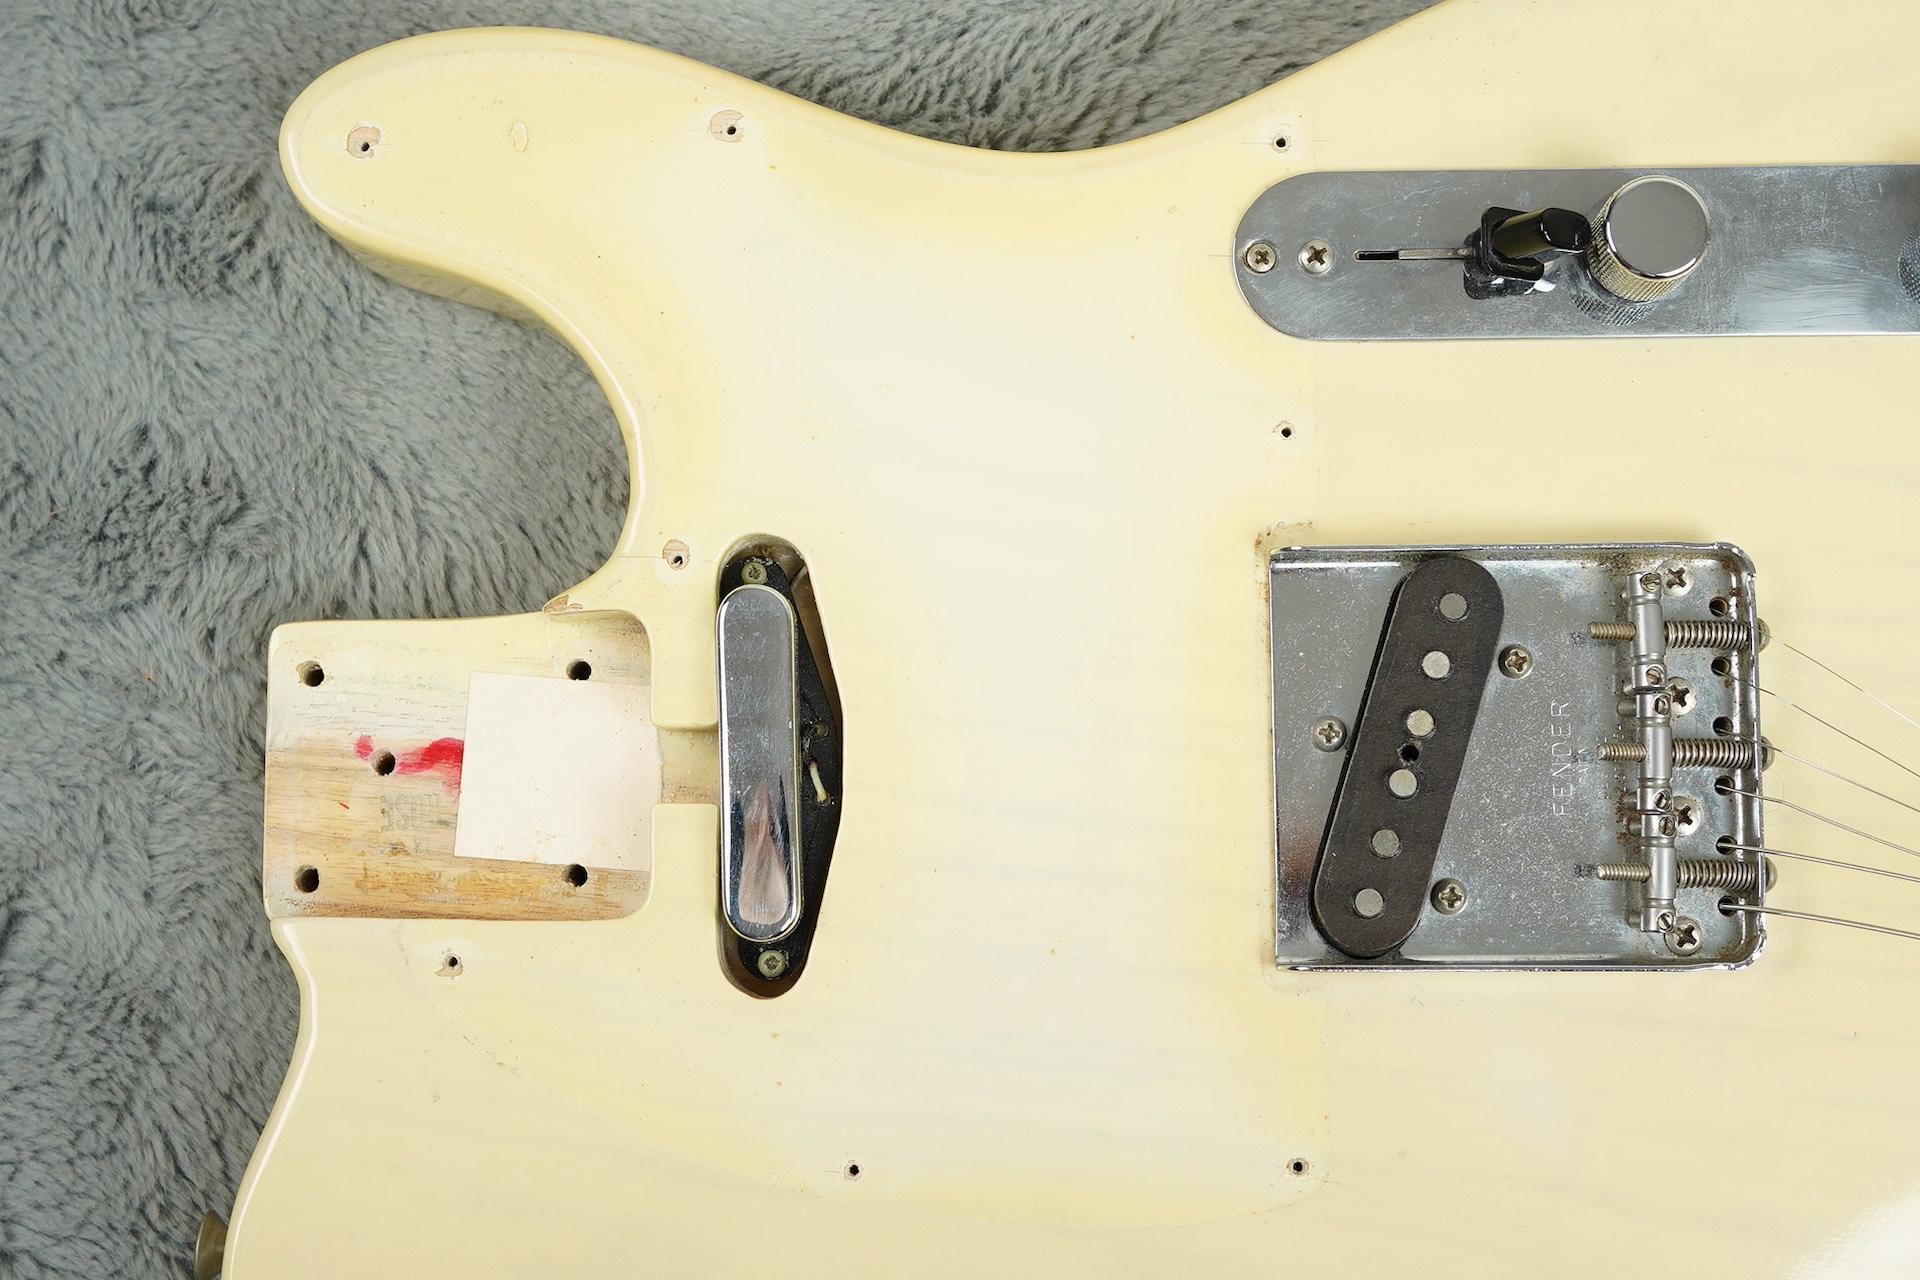 1973 Fender Telecaster Blonde near MINT